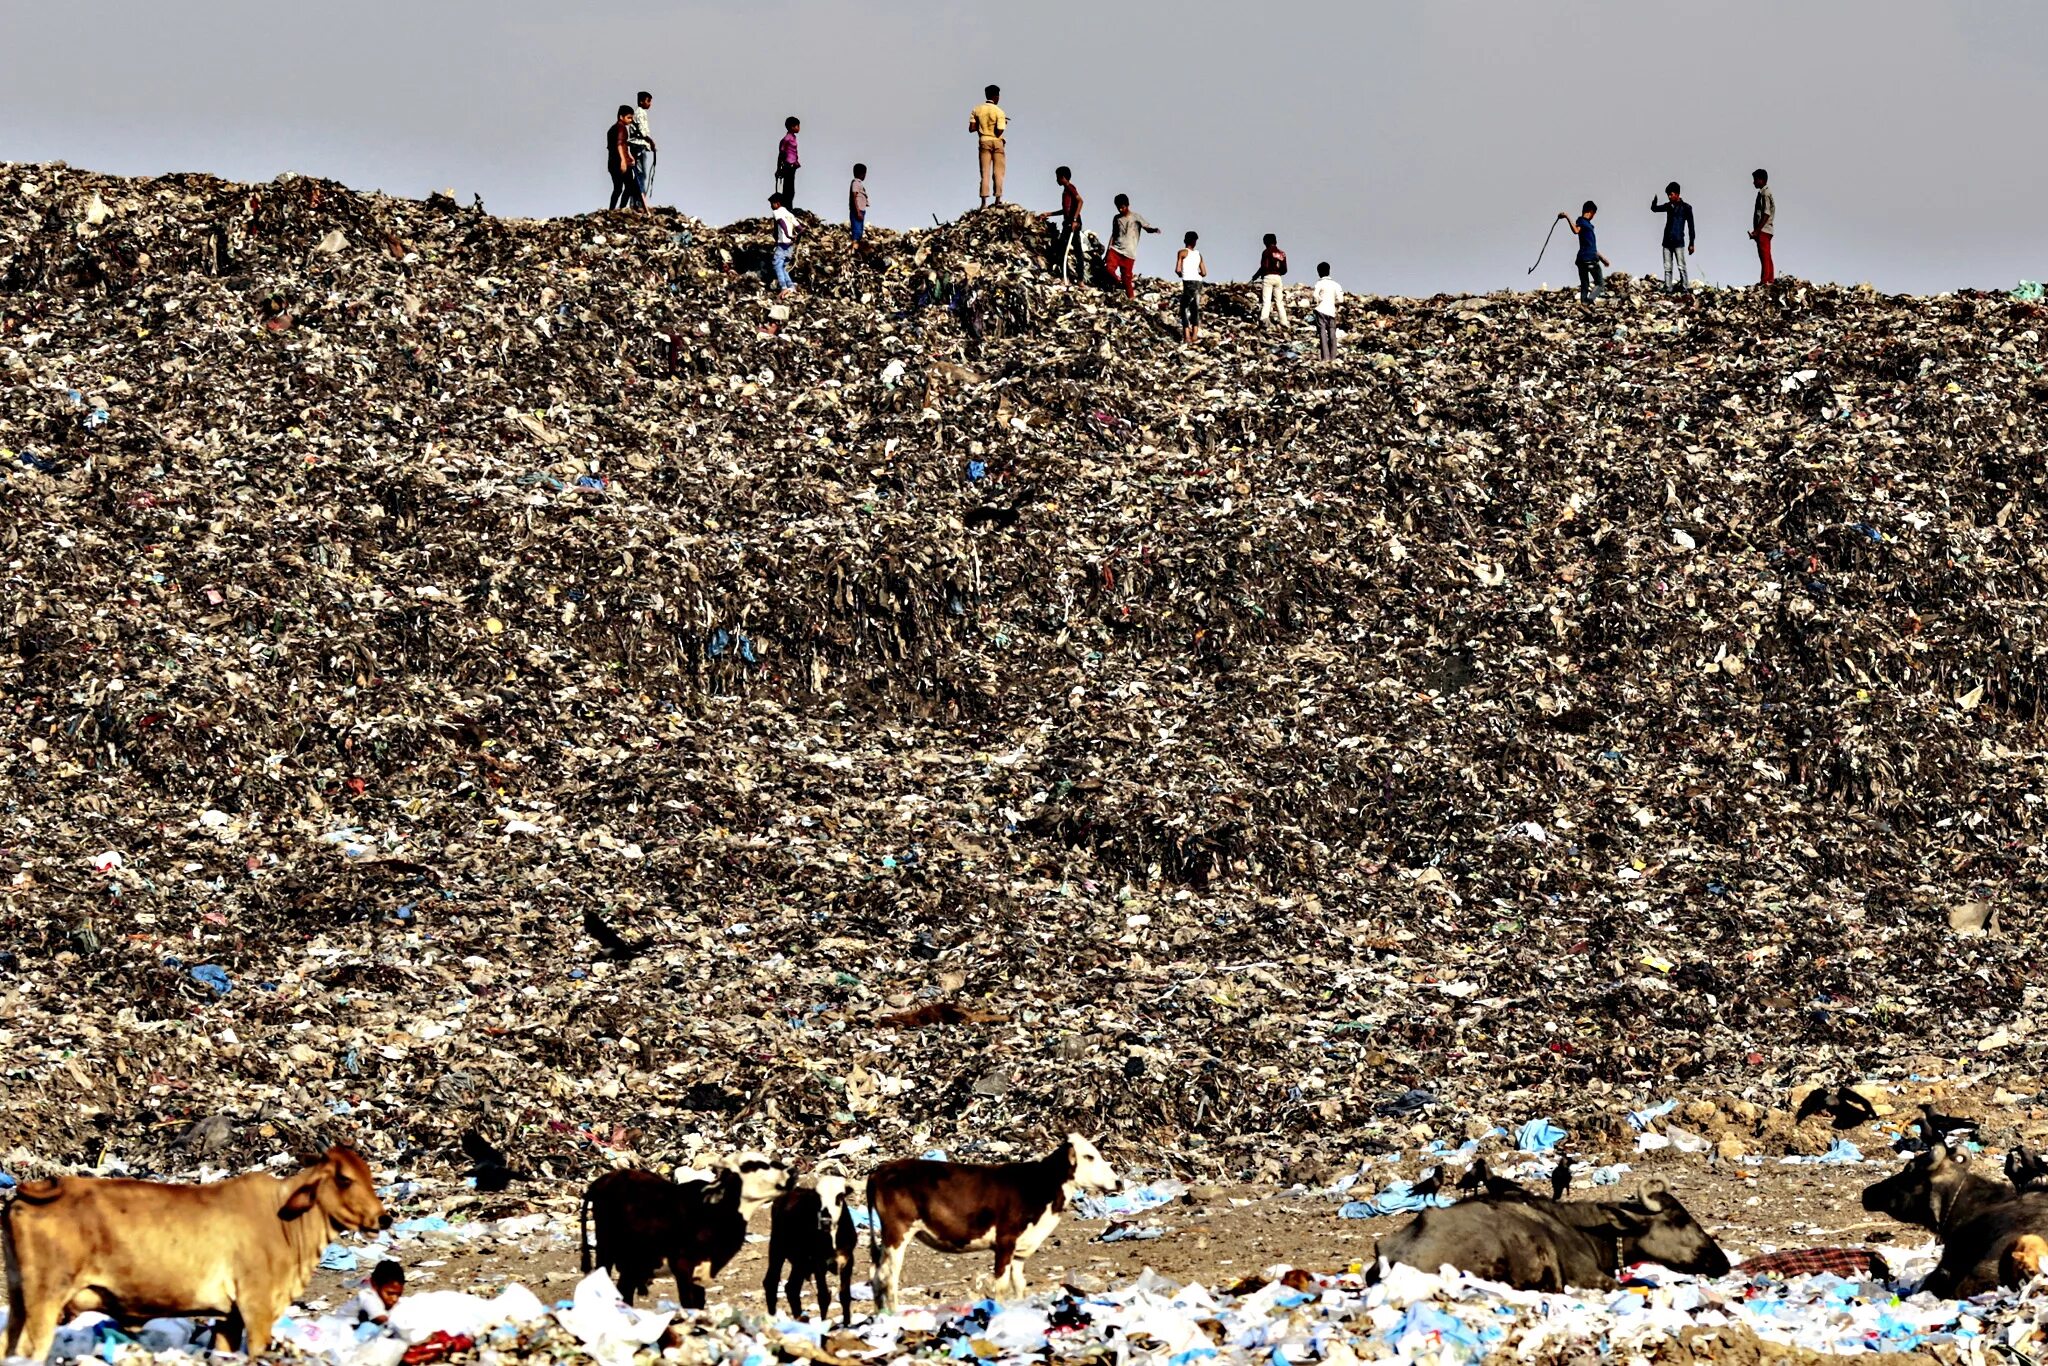 Мусорная мусорка. Свалка Deonar, Мумбаи, Индия. Самый большой мусорный полигон в мире. Свалка Deonar, Мумбаи, Индия (132 гектара).